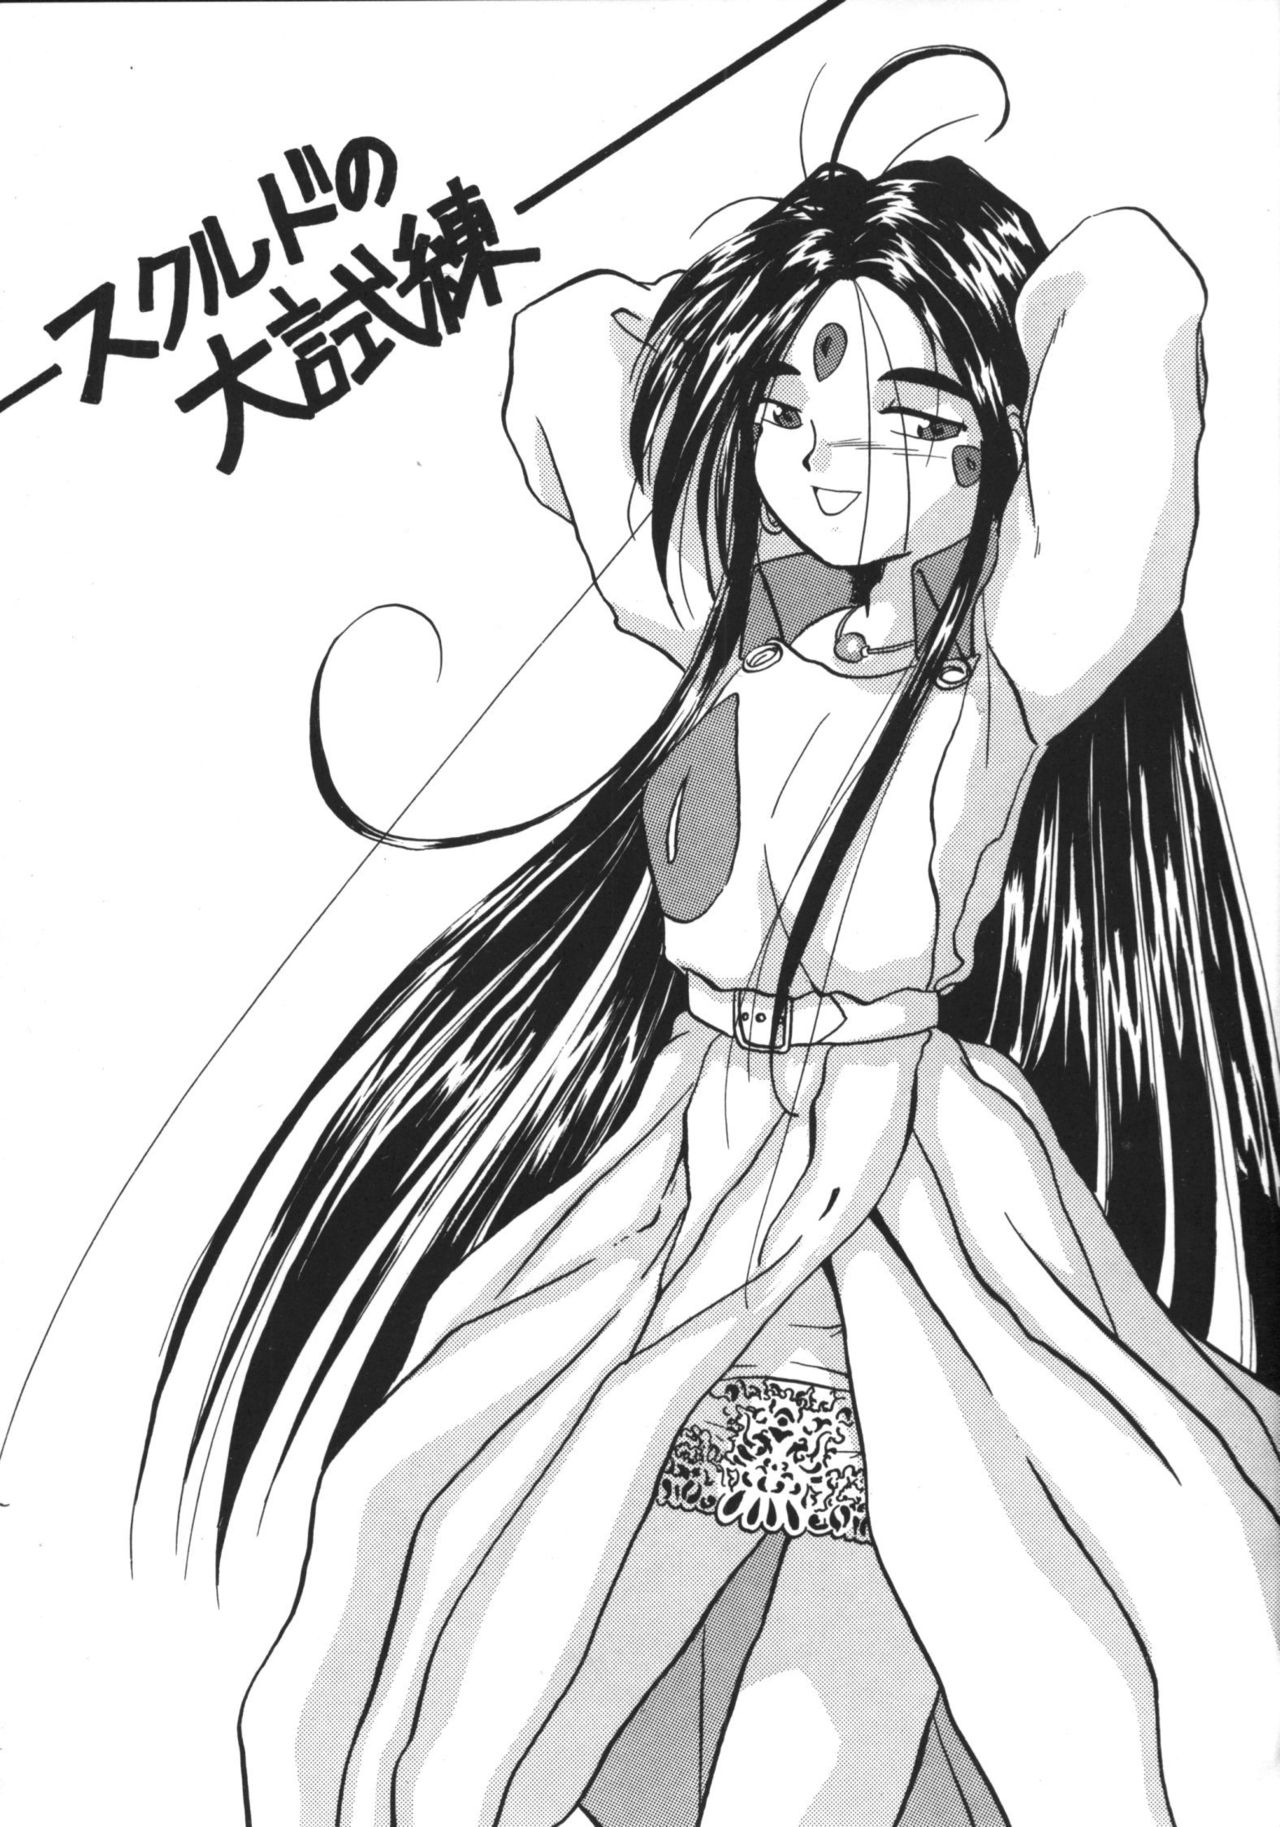 [Tenchuugumi] IF 6 (Ah! Megami-sama / Ah! My Goddess!) 